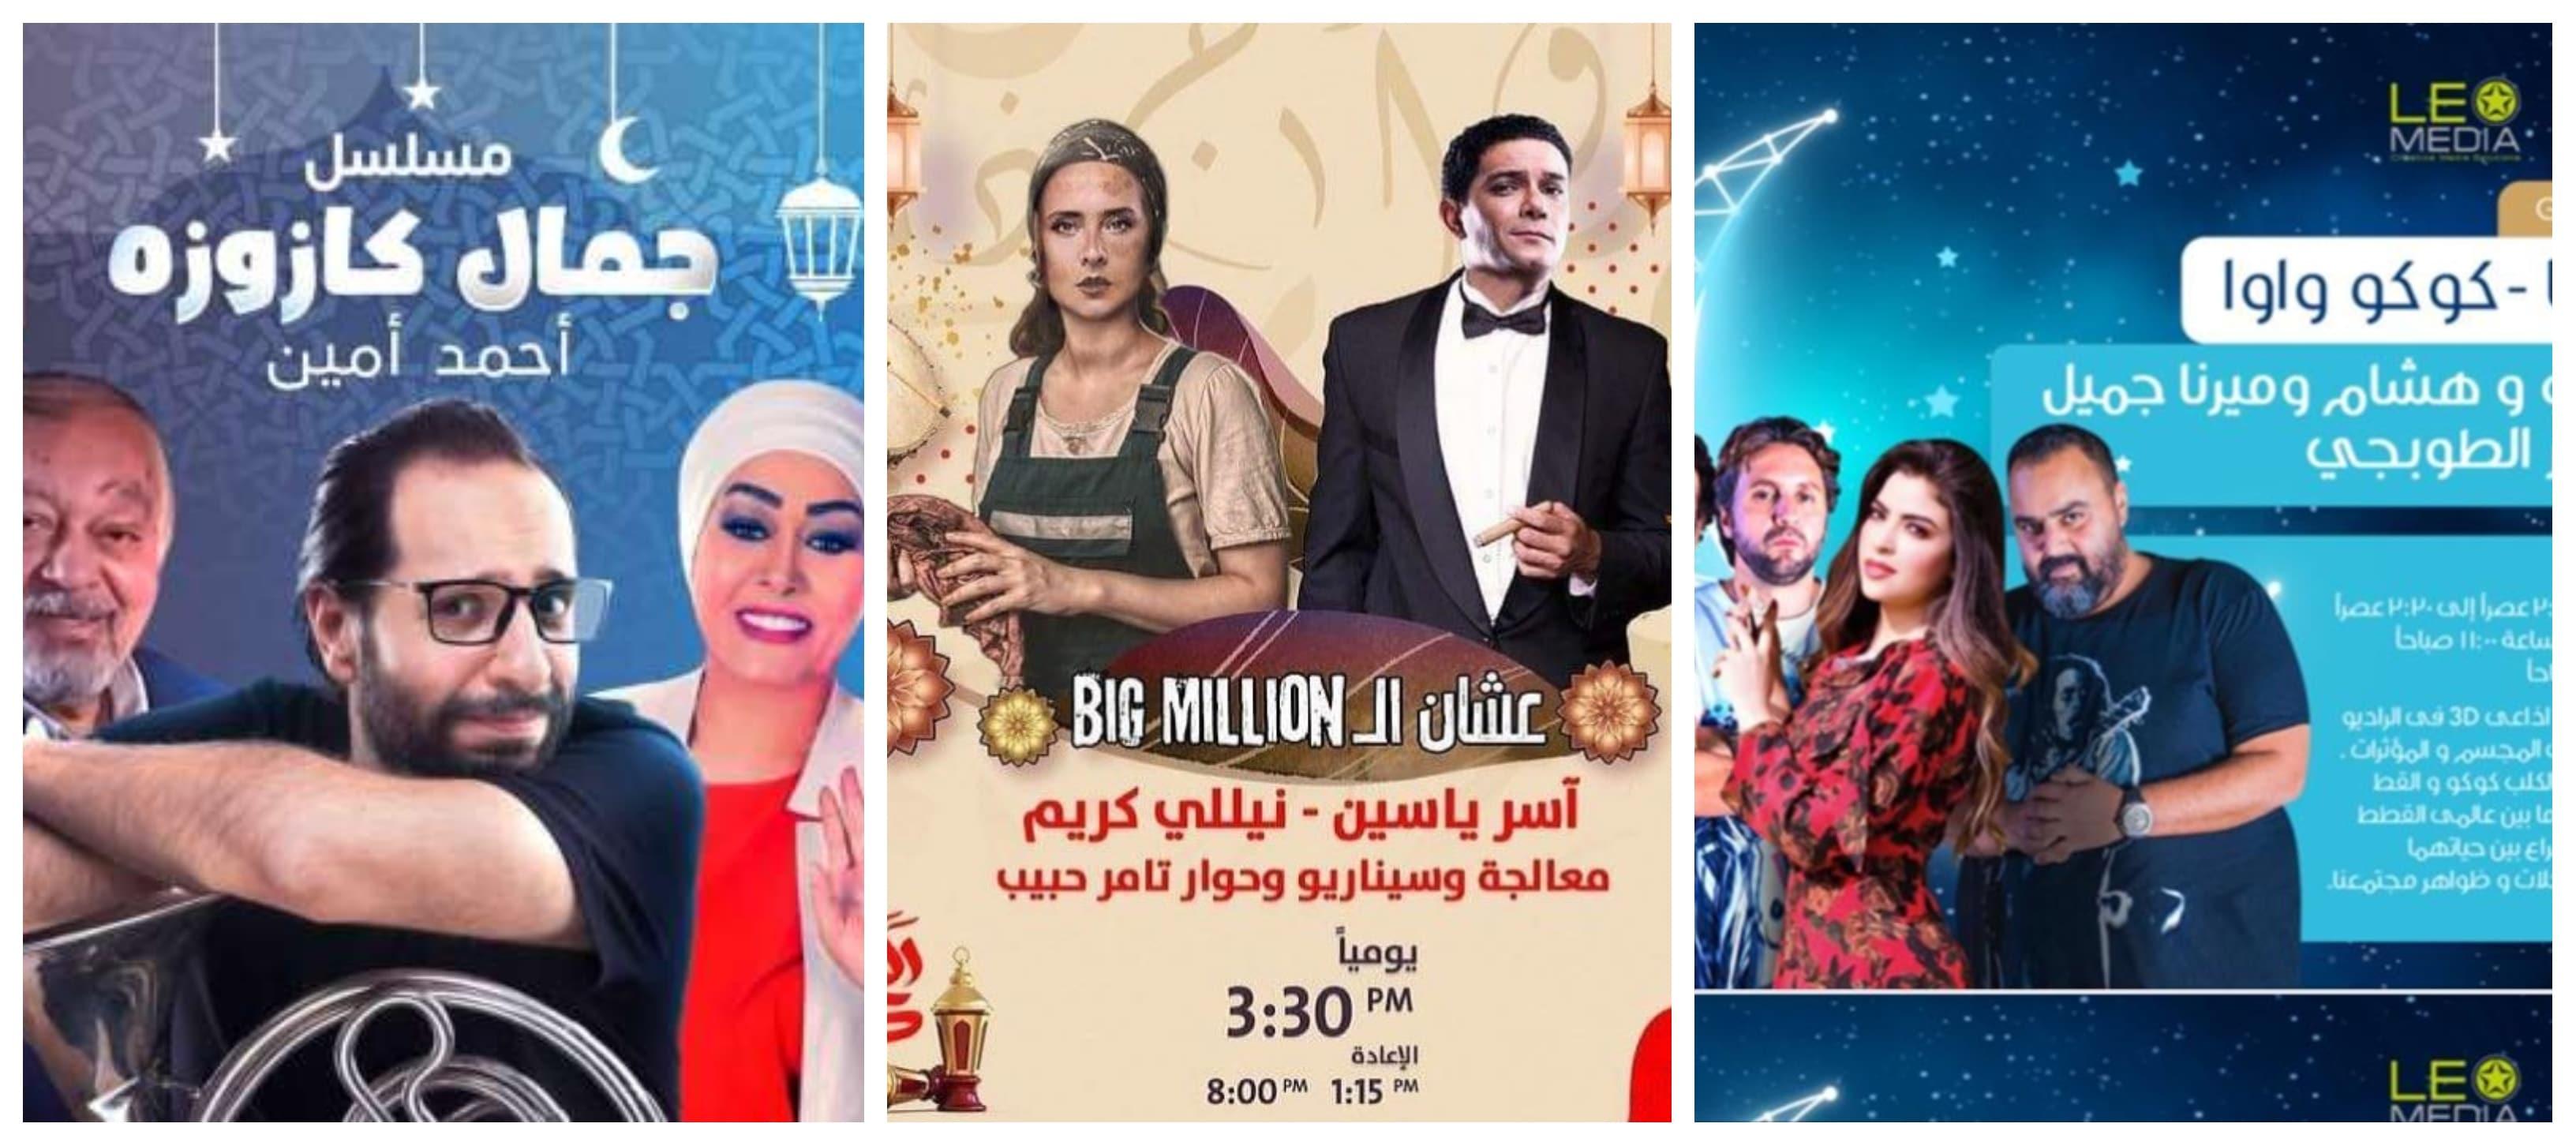 مسلسلات إذاعية رمضان 2021 مسلسل كوكو واوا، علشان ال big million وجمال كازوزة